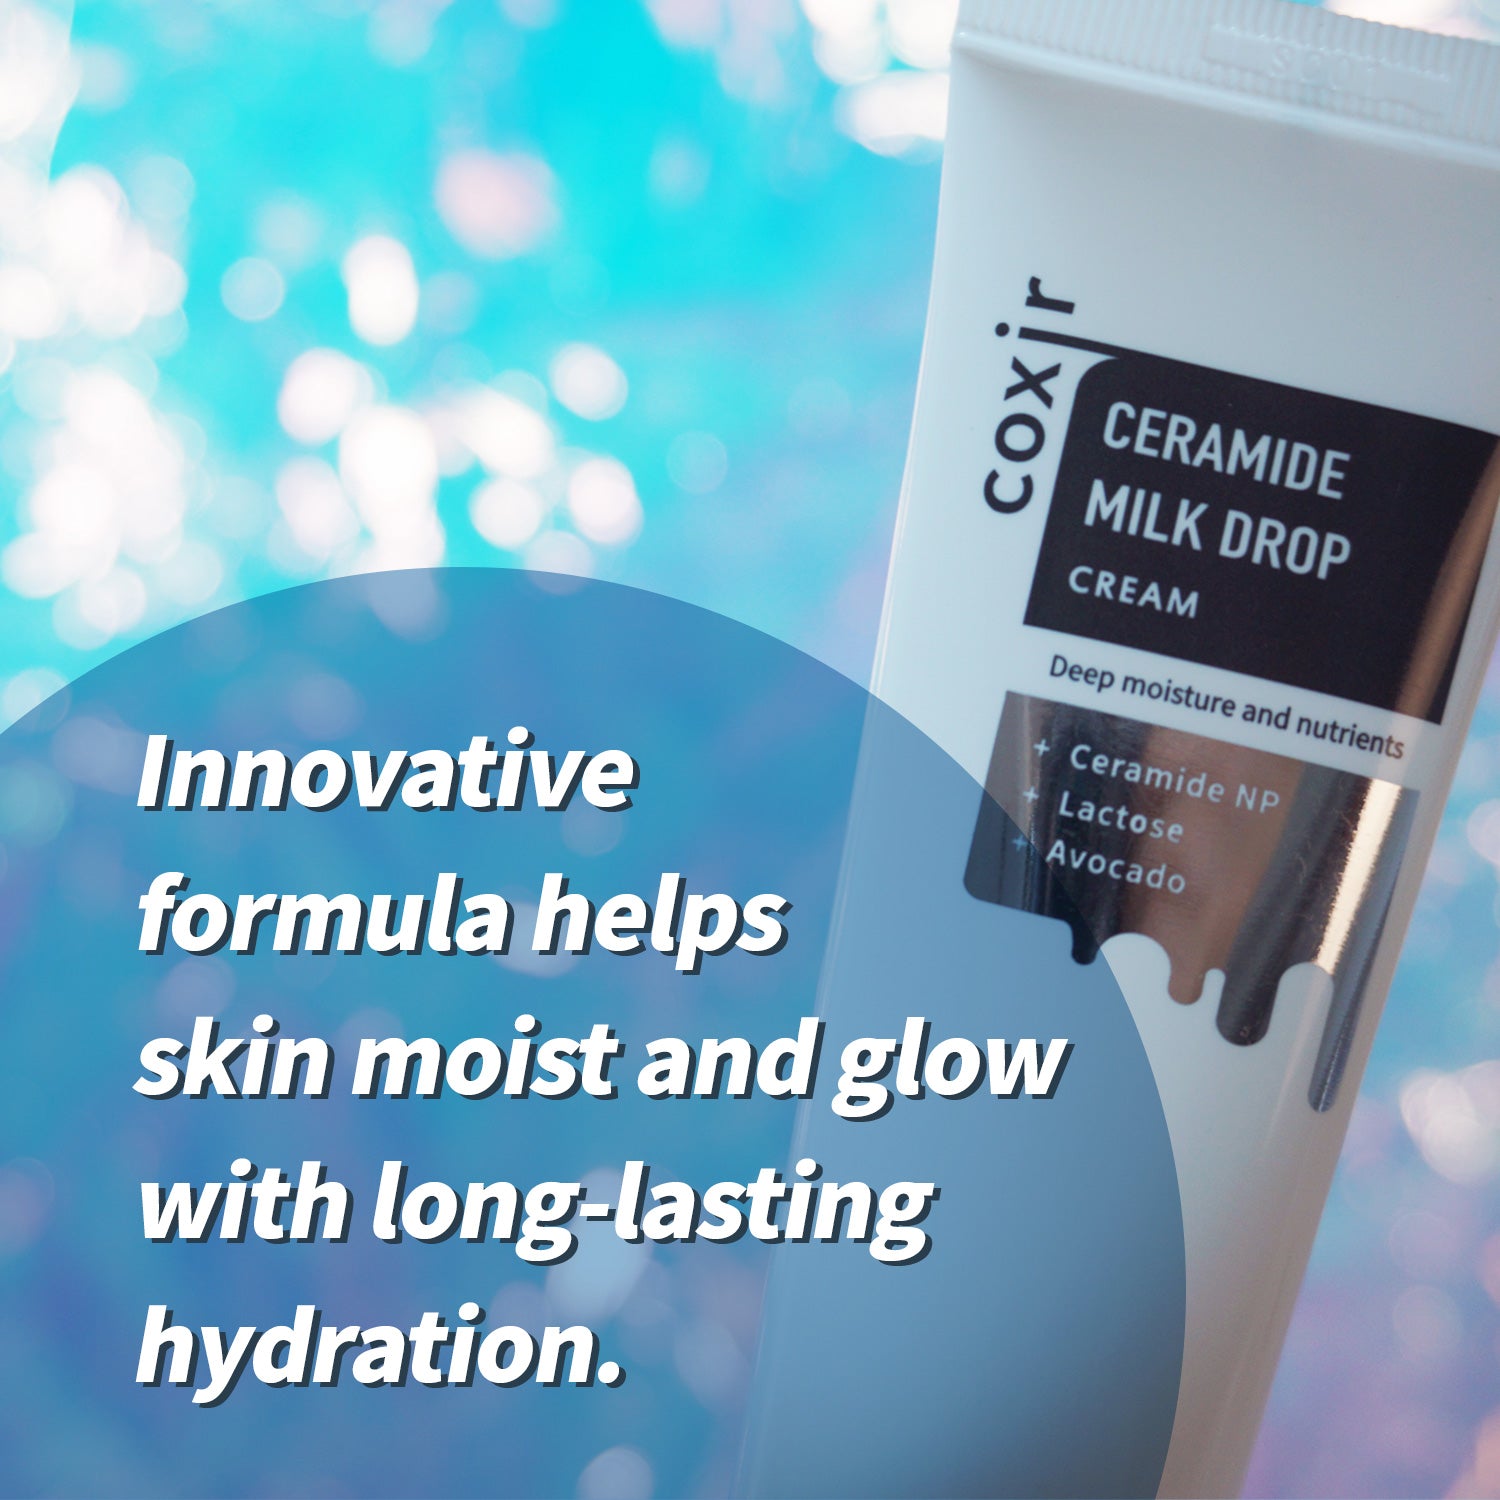 Ceramide Milk Drop Cream